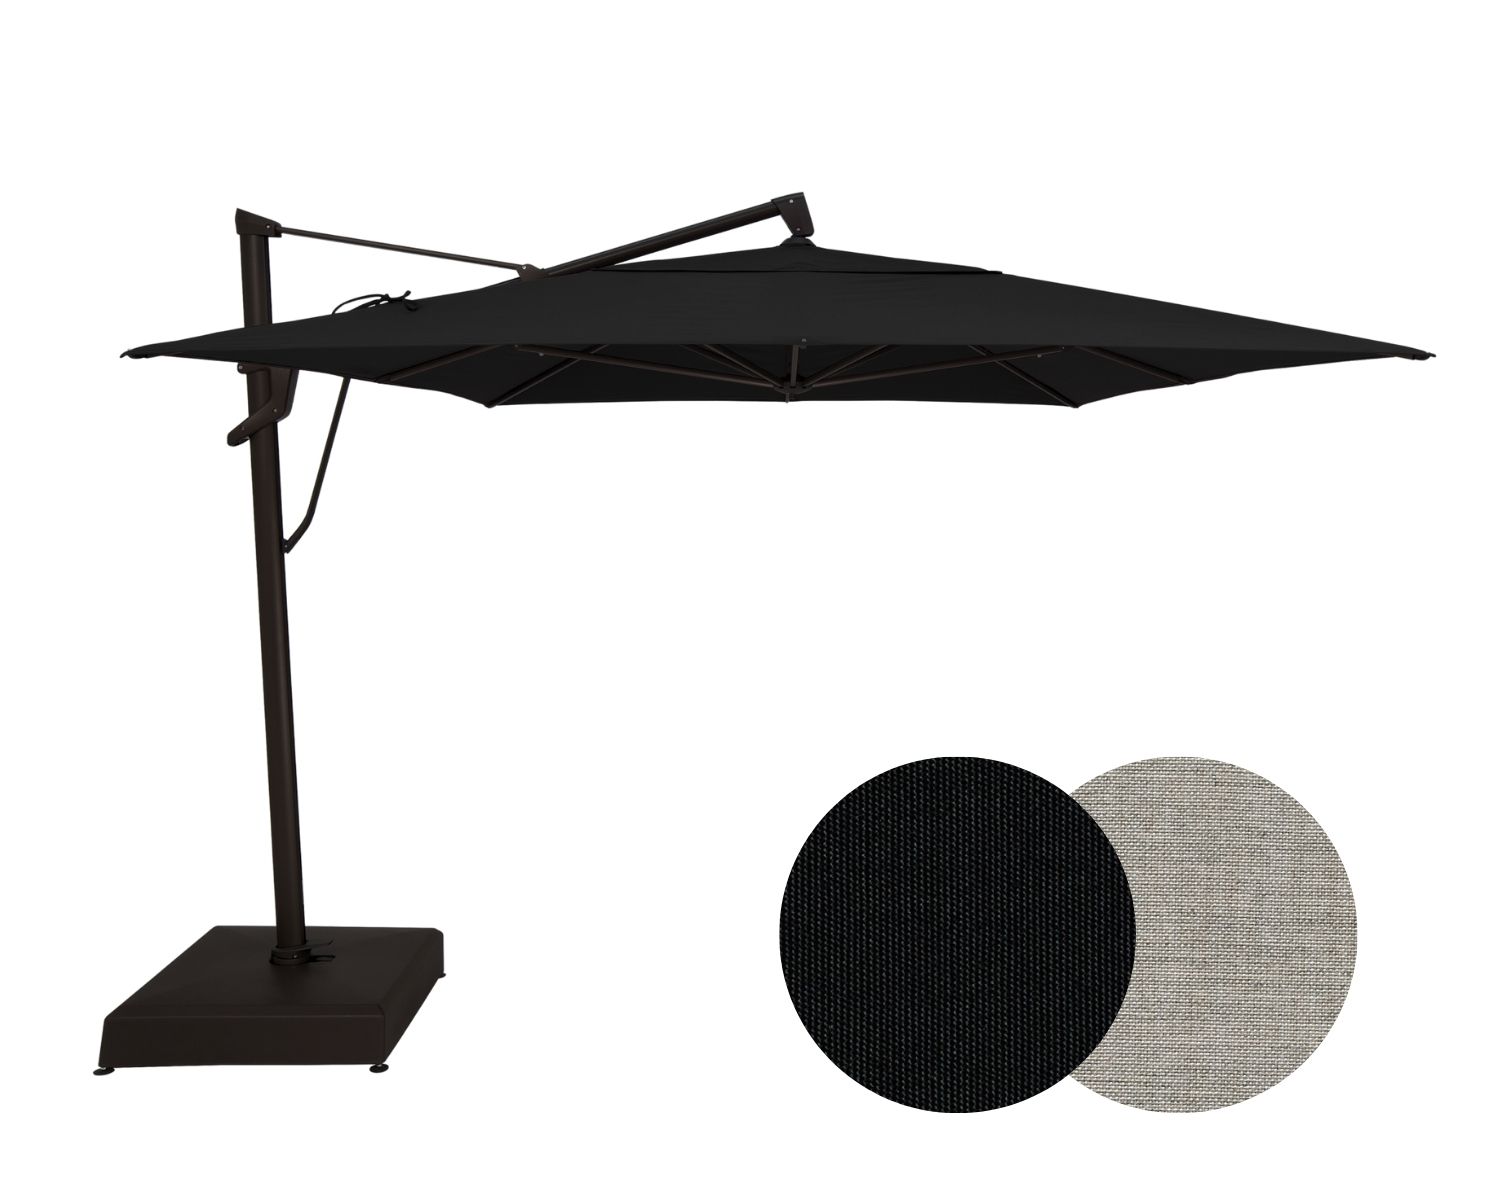 Auto-Tilt Rectangle Cantilever Patio Umbrella - 10' x 13'